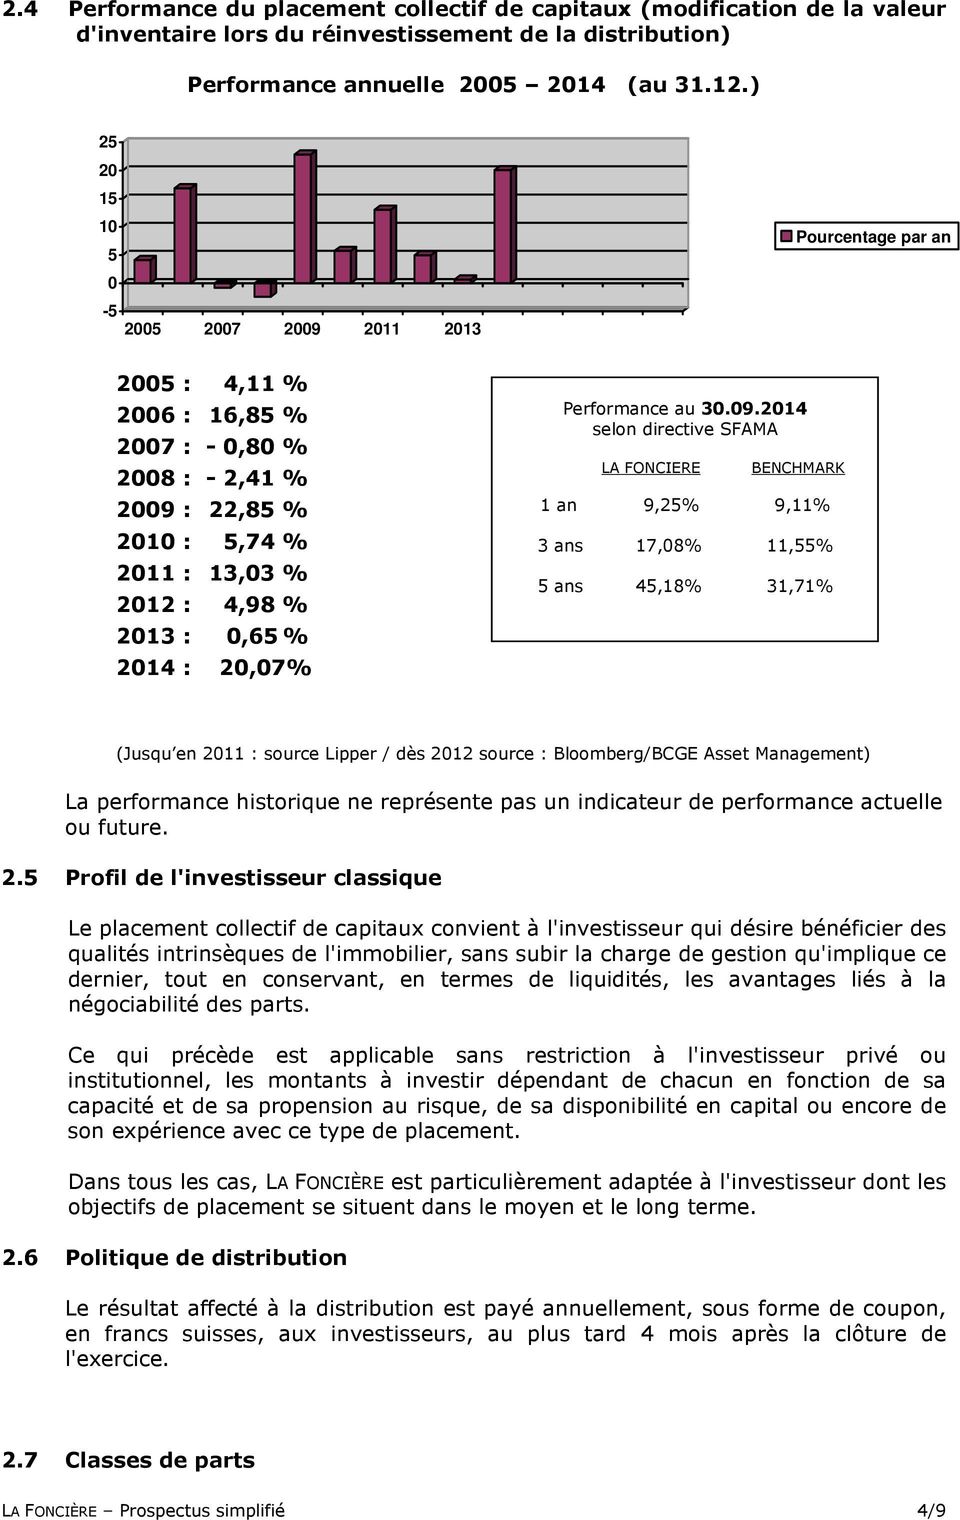 2014 : 20,07% Performance au 30.09.